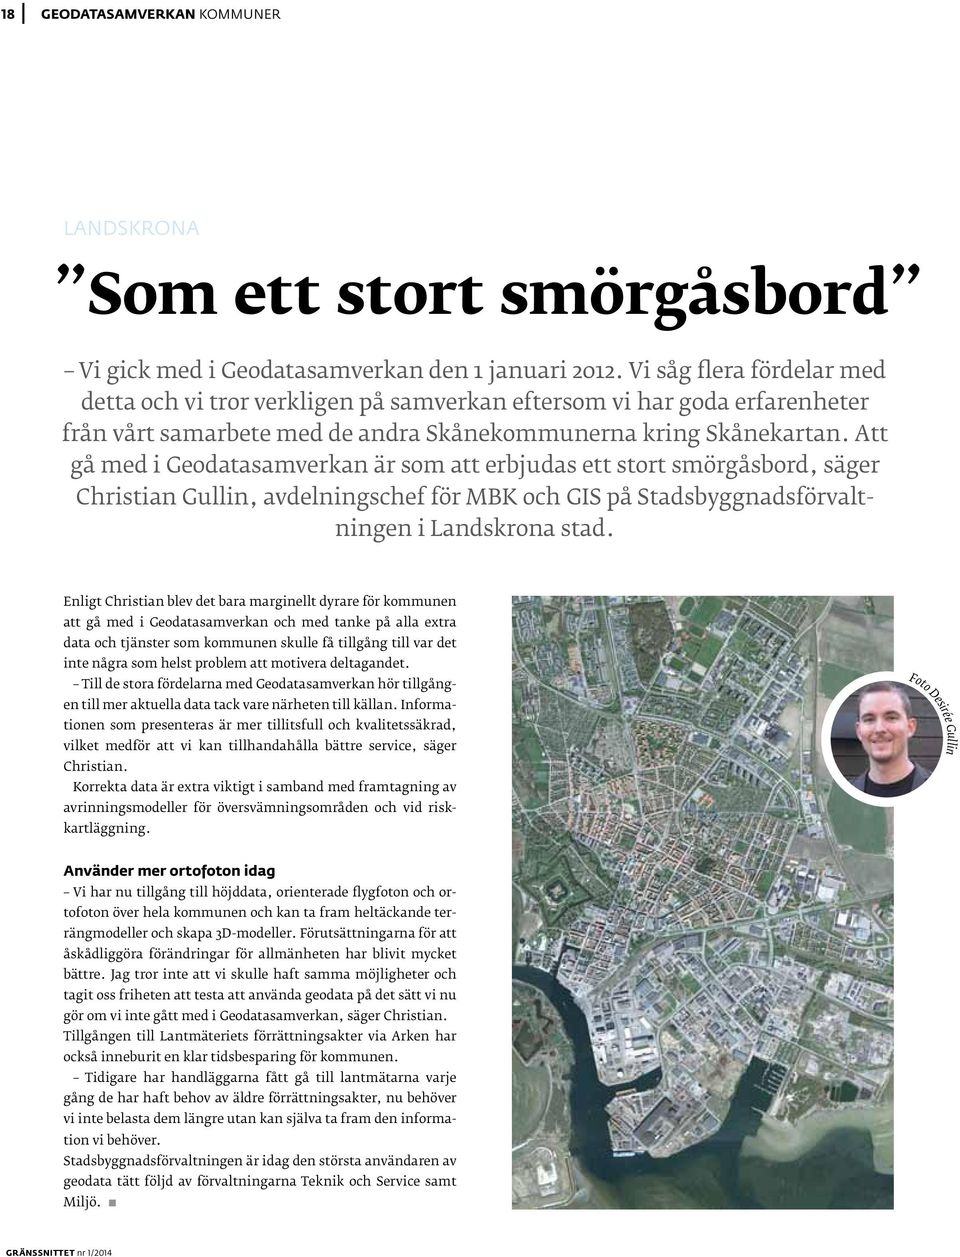 Att gå med i Geodatasamverkan är som att erbjudas ett stort smörgåsbord, säger Christian Gullin, avdelningschef för MBK och GIS på Stadsbyggnadsförvaltningen i Landskrona stad.